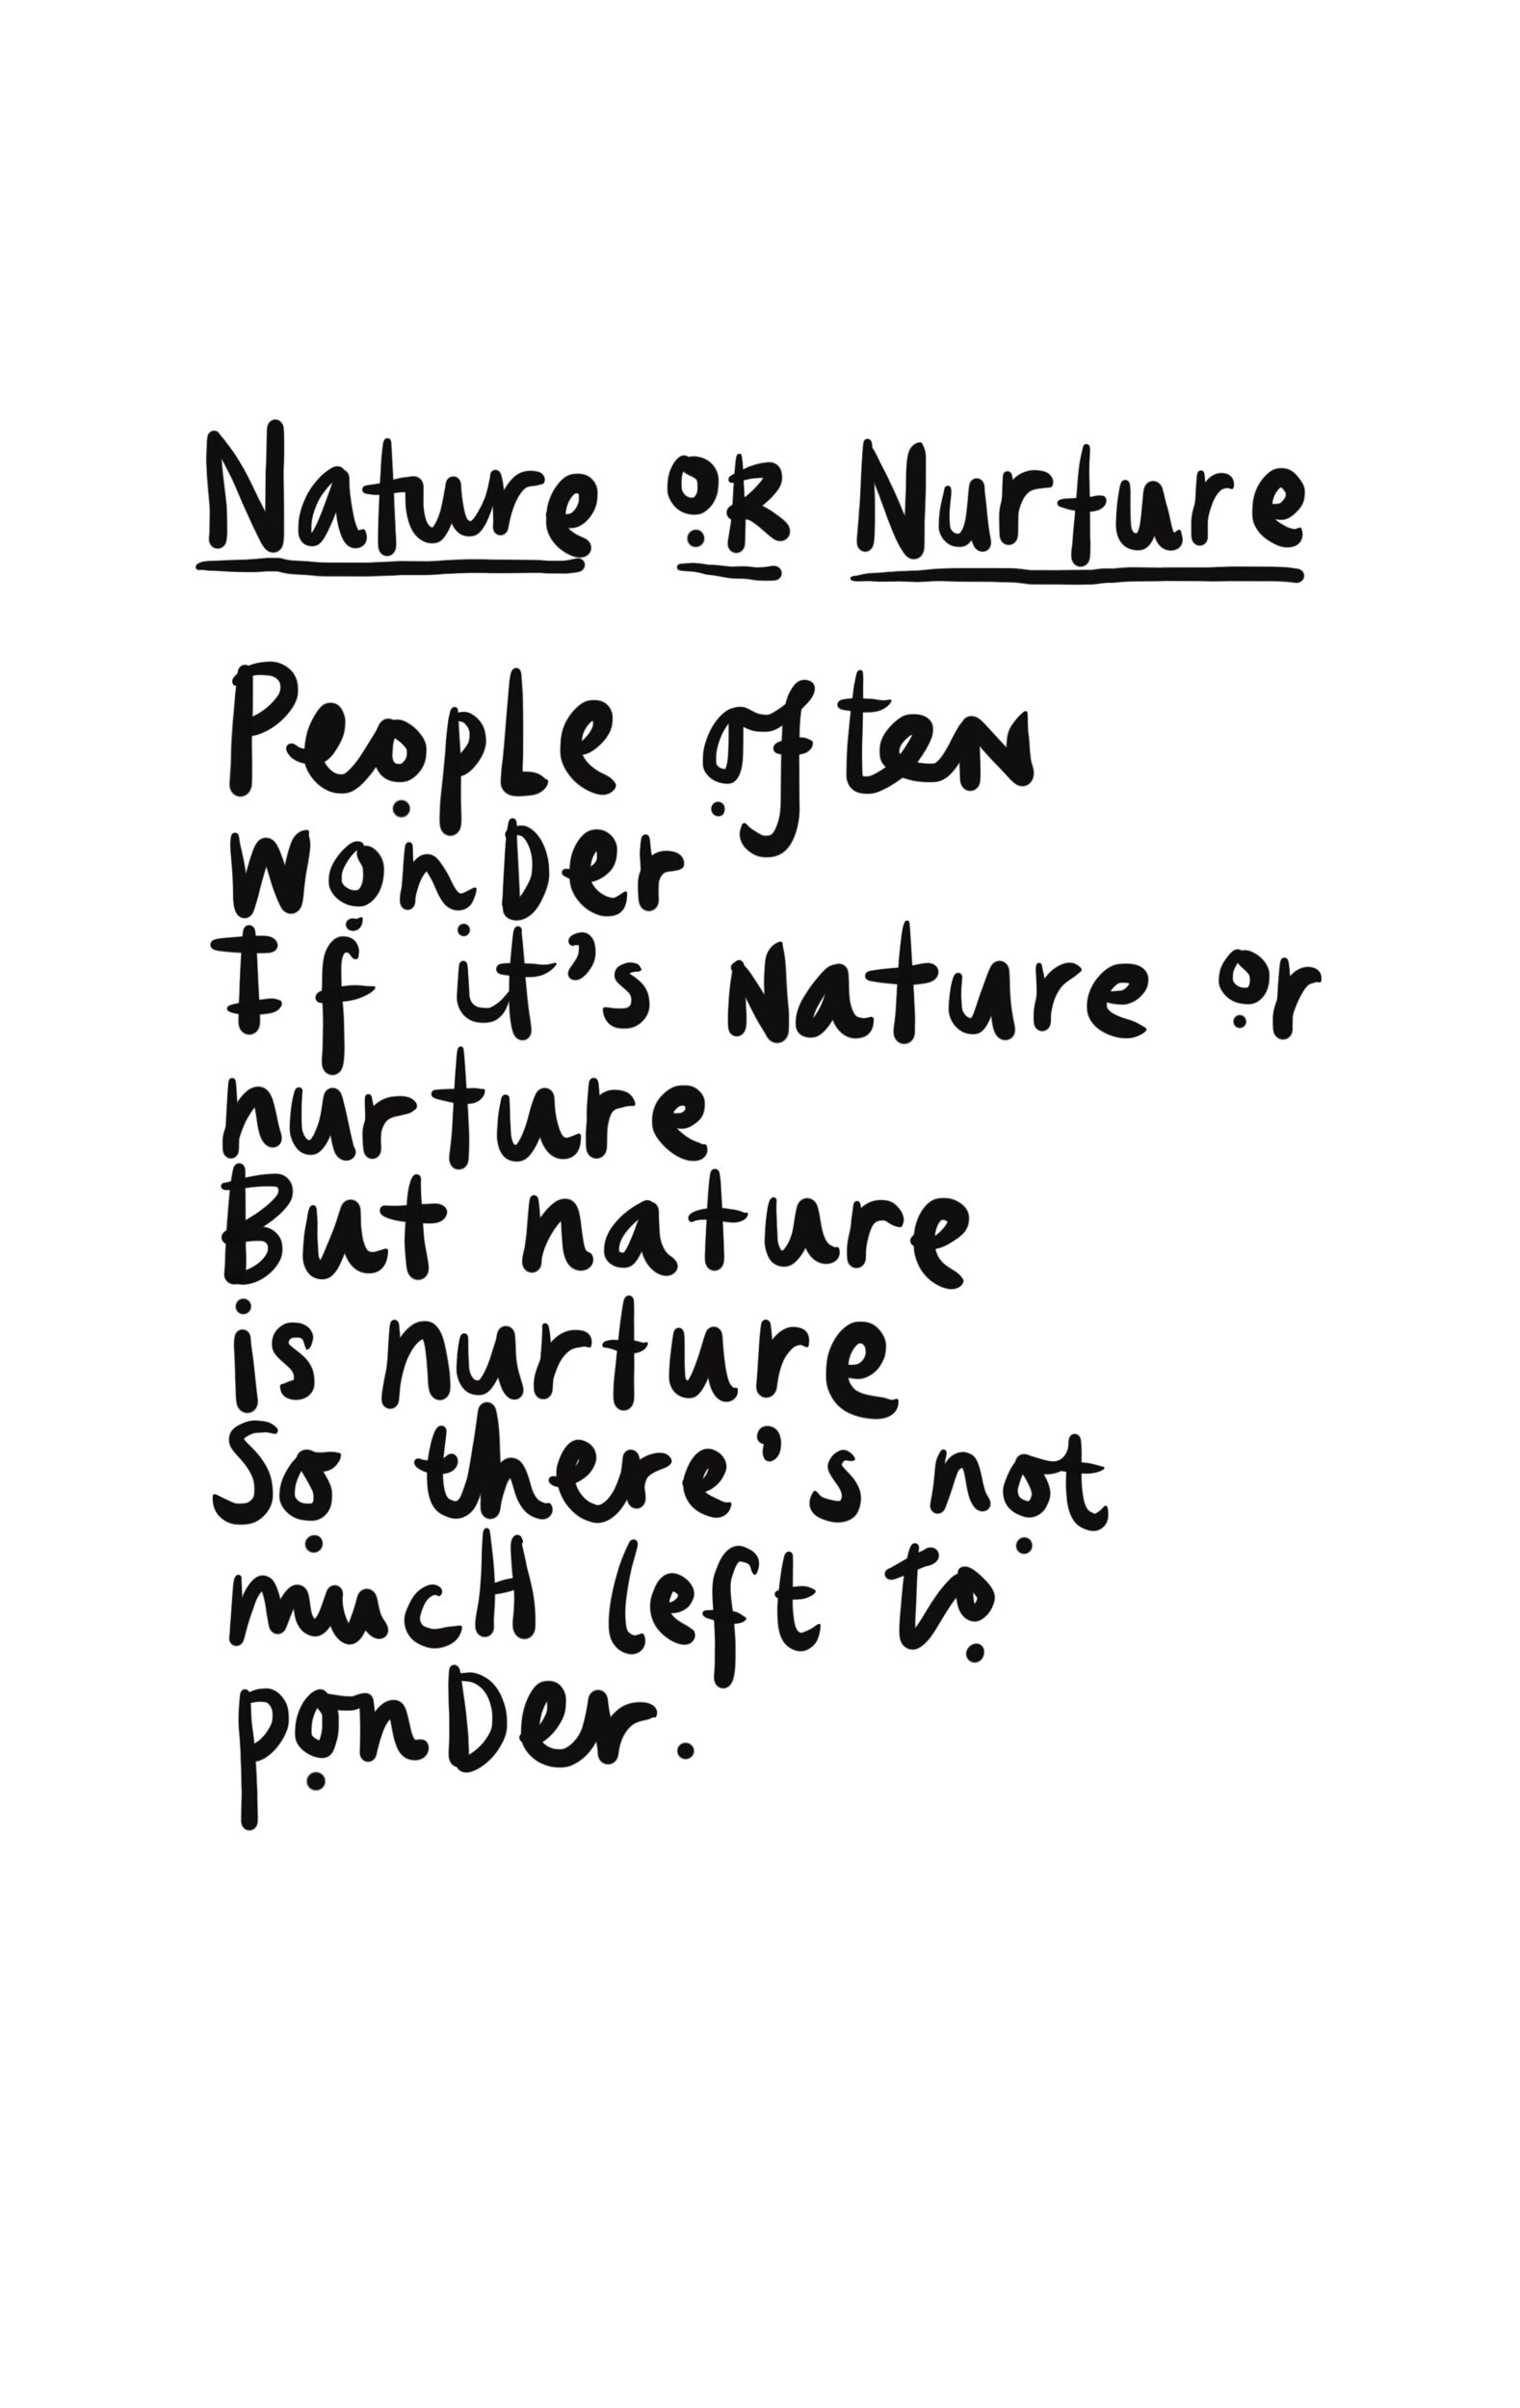 Nature_Or_Nurture_Poem.jpeg